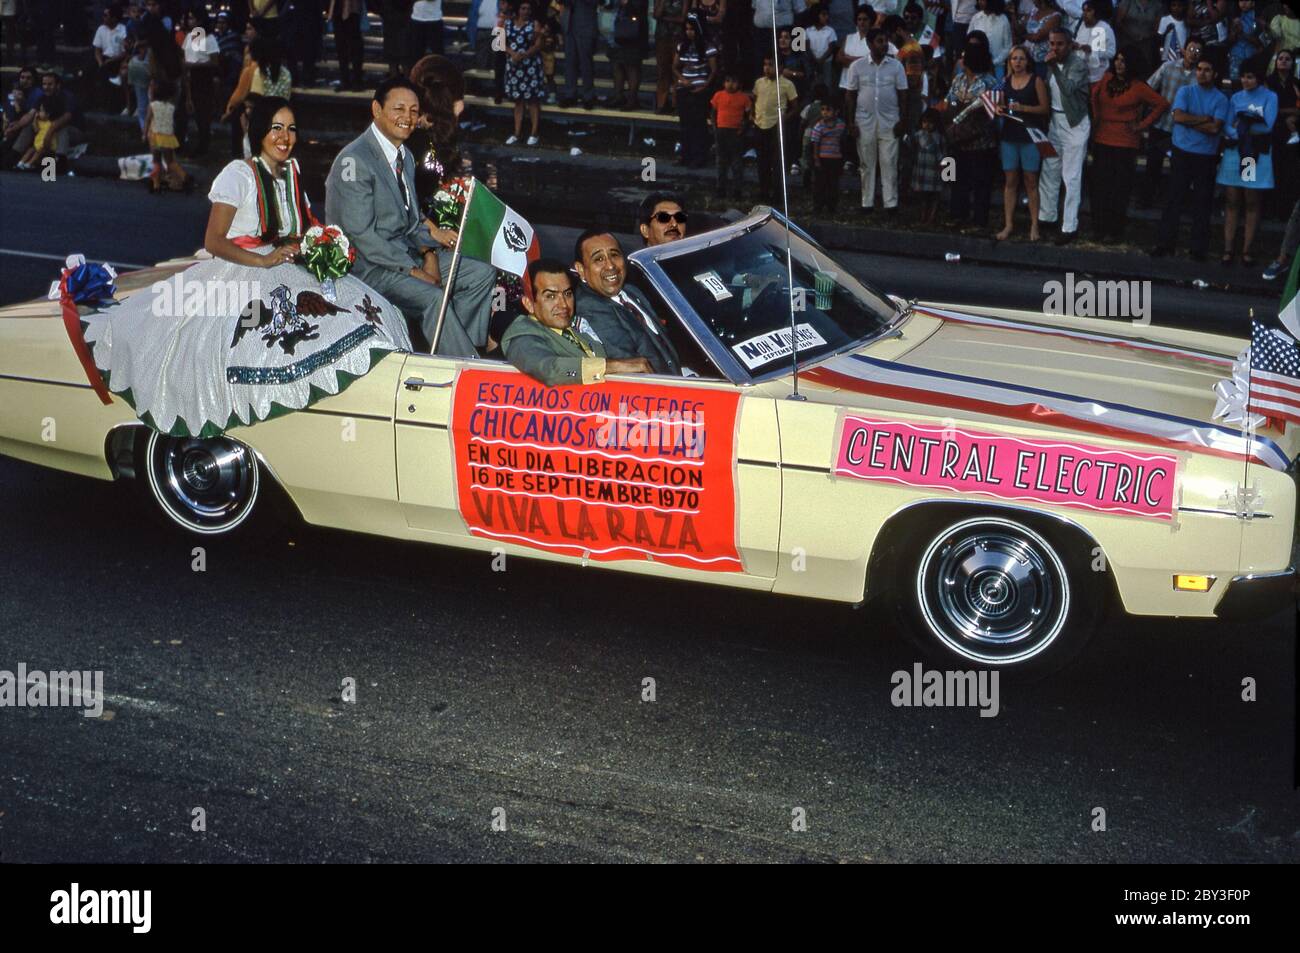 Une voiture dans un défilé de la communauté Chicano à Los Angeles, Californie, Etats-Unis 1970 (Chicanos et Chicanas sont des hommes et des femmes d'origine mexicaine). Une étiquette sur le côté de la voiture sponsorisée indique (en espagnol) la fierté de leur culture ('Viva la Raza' - vive la course). La Journée de l'indépendance (Día de la Independencia) est un jour férié au Mexique le 16 septembre pour célébrer la libération de la domination espagnole en 1810. Un drapeau mexicain vole aux côtés d'une femme en robe traditionnelle. Banque D'Images